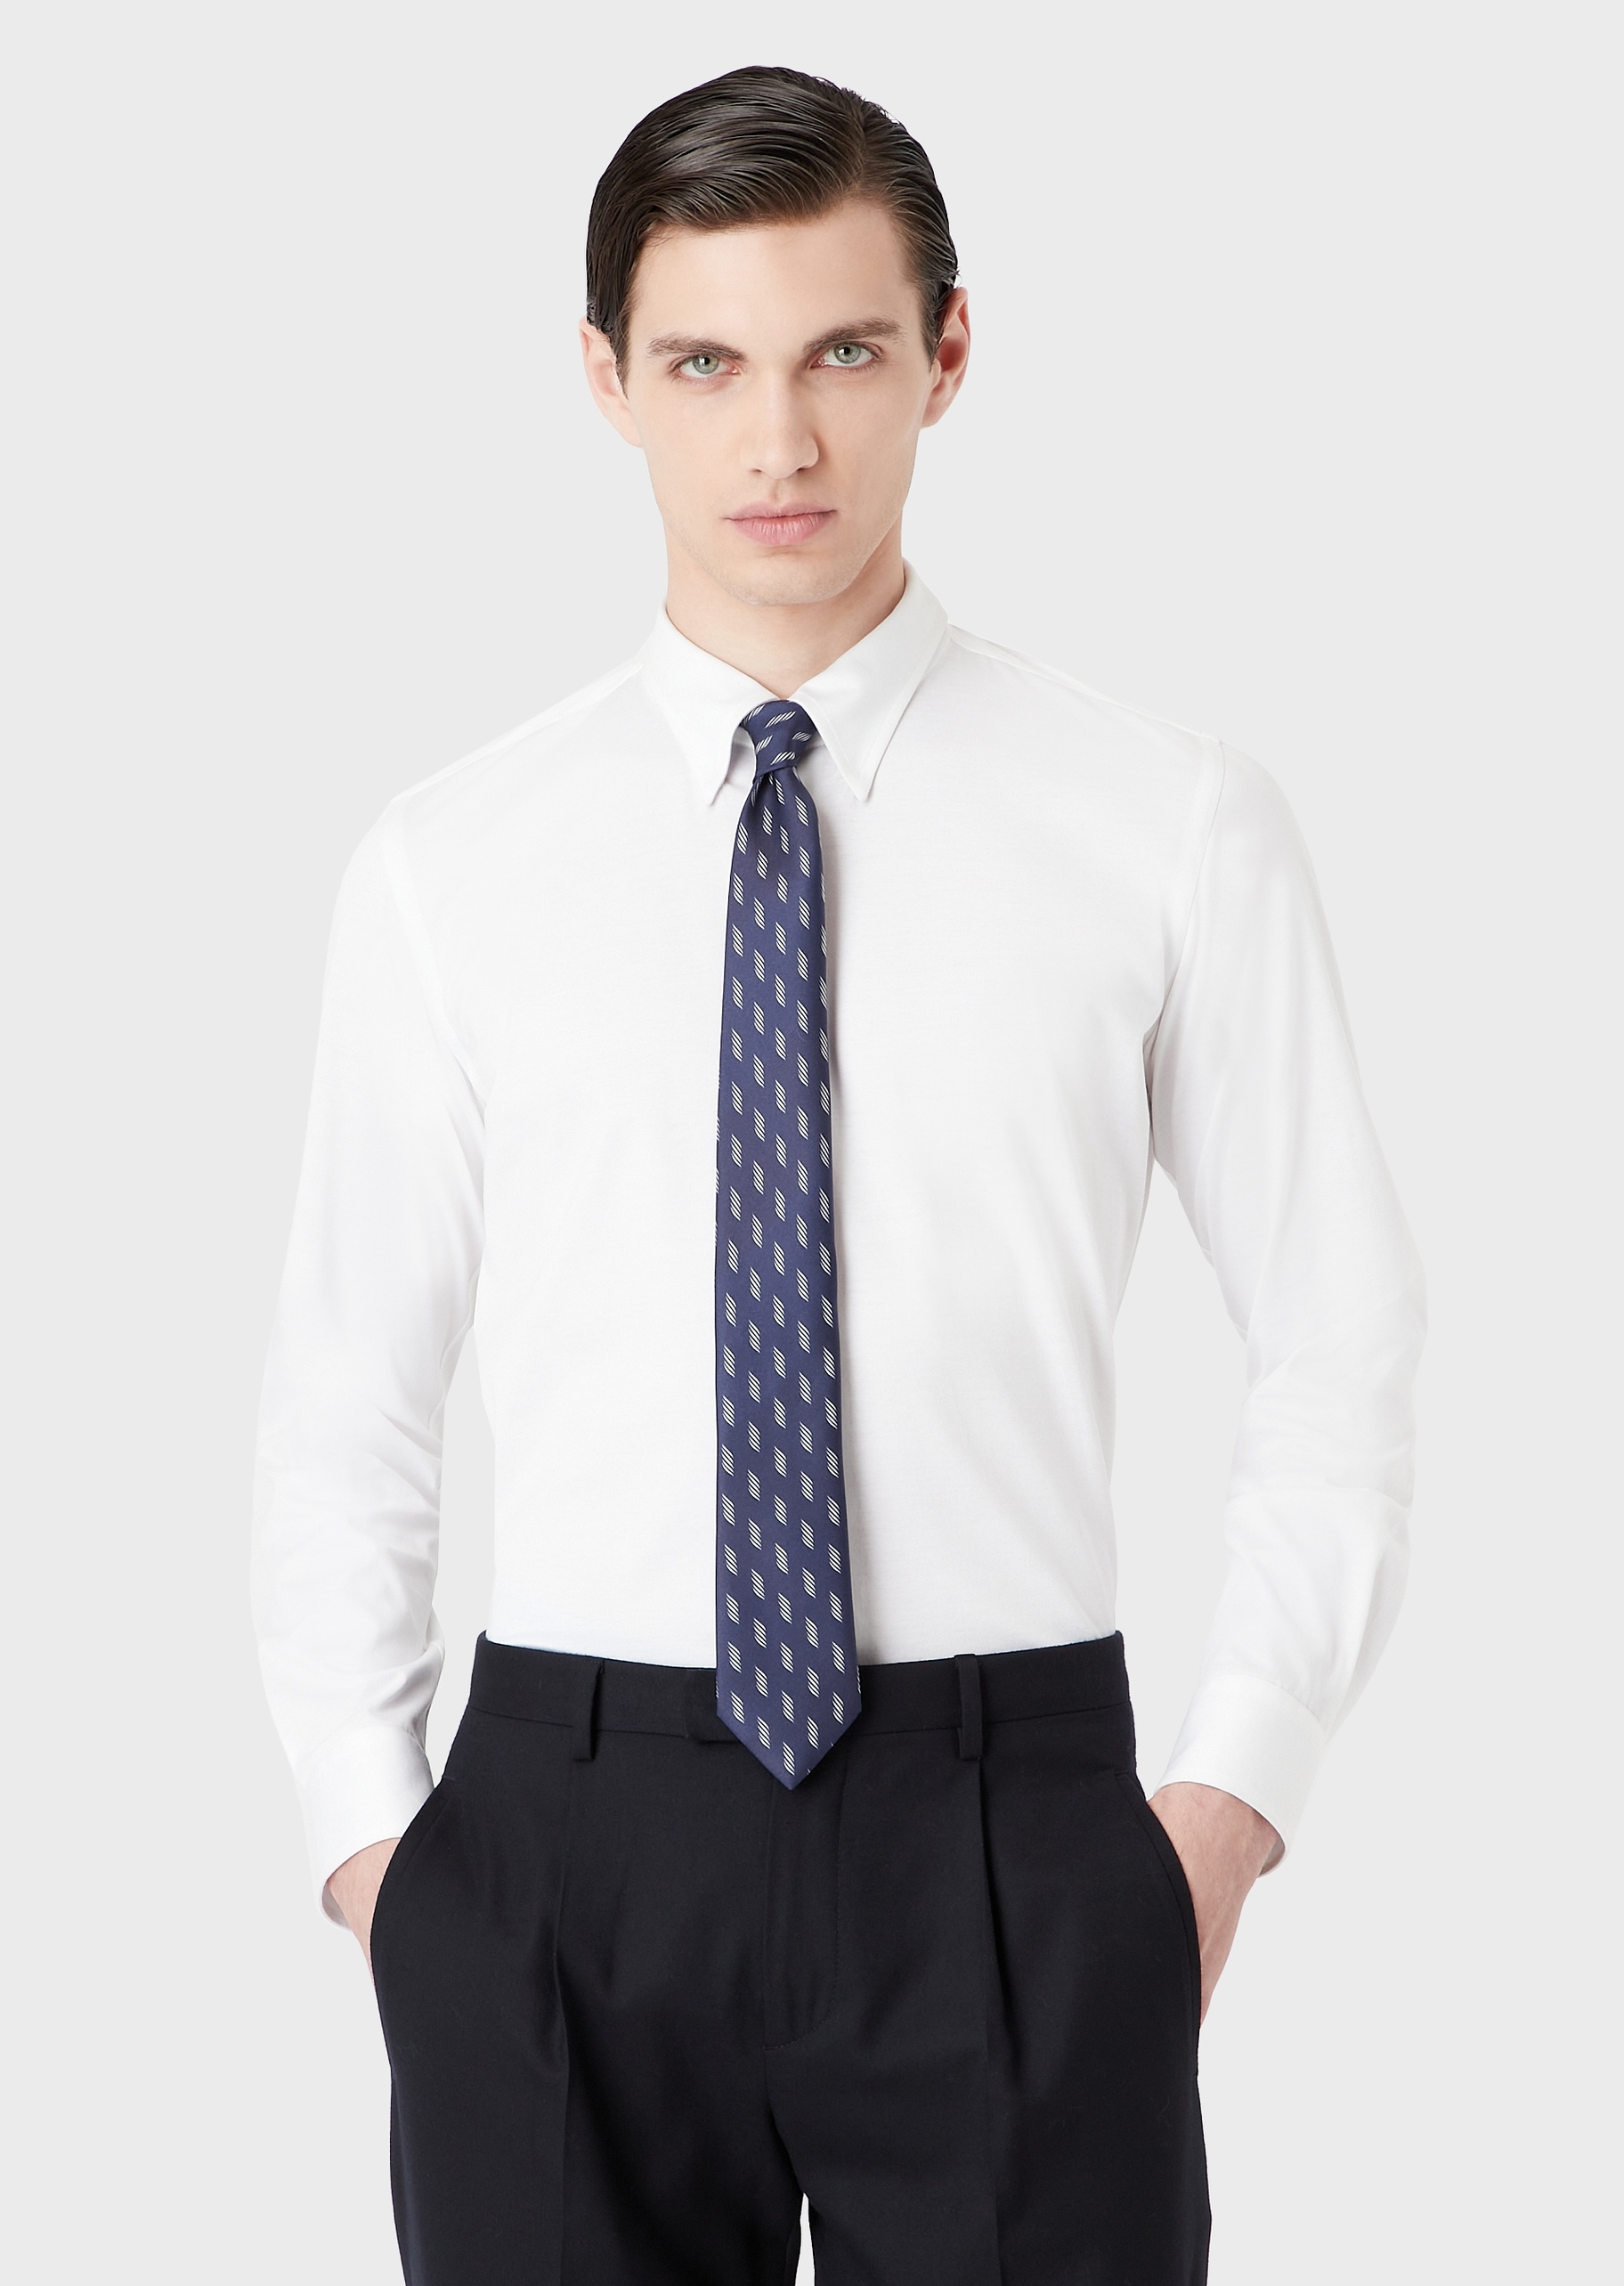 Giorgio Armani 条纹图案纯真丝领带